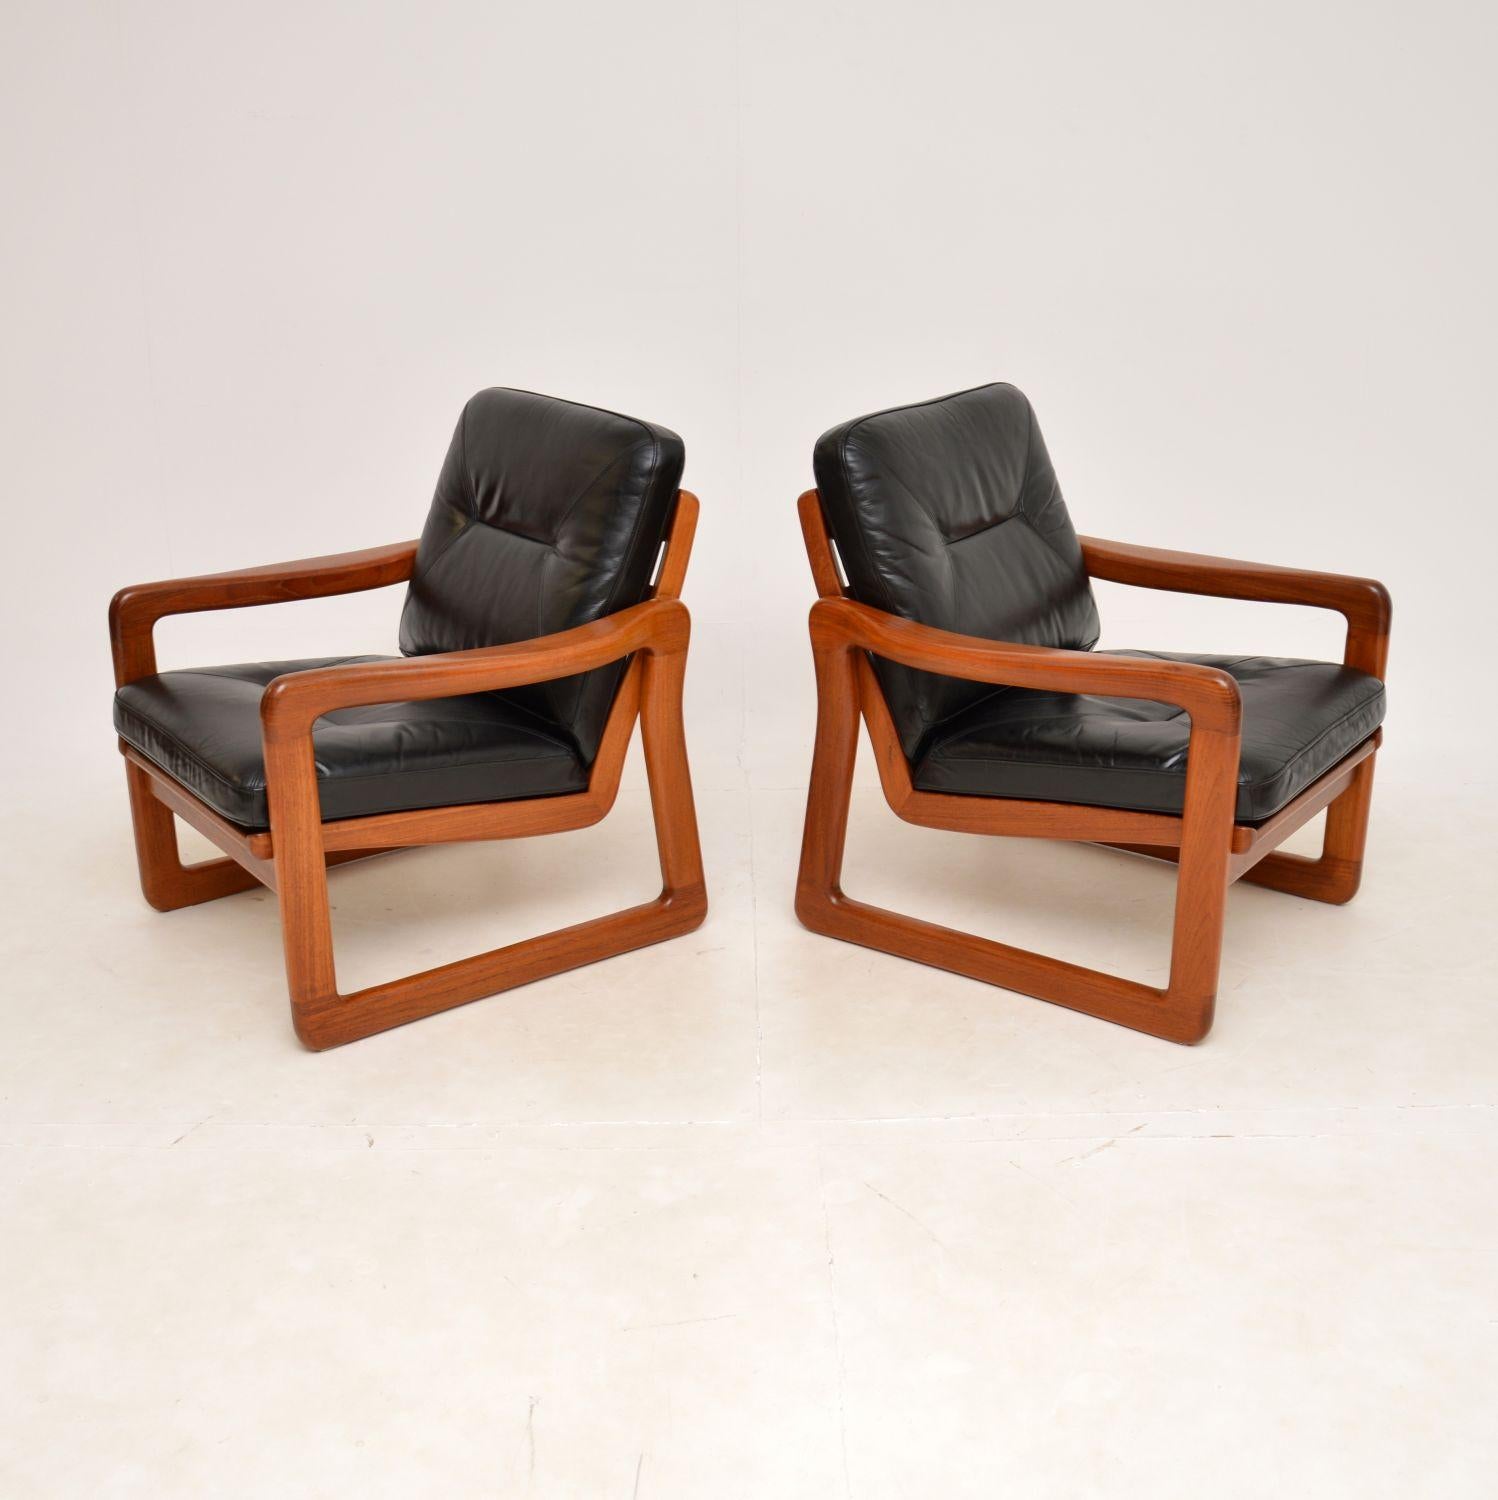 Une paire de fauteuils danois vintage en teck et cuir, très élégante et extrêmement confortable. Récemment importées du Danemark, elles datent des années 1970.

La qualité est exceptionnelle, les cadres en teck massif sont très robustes et